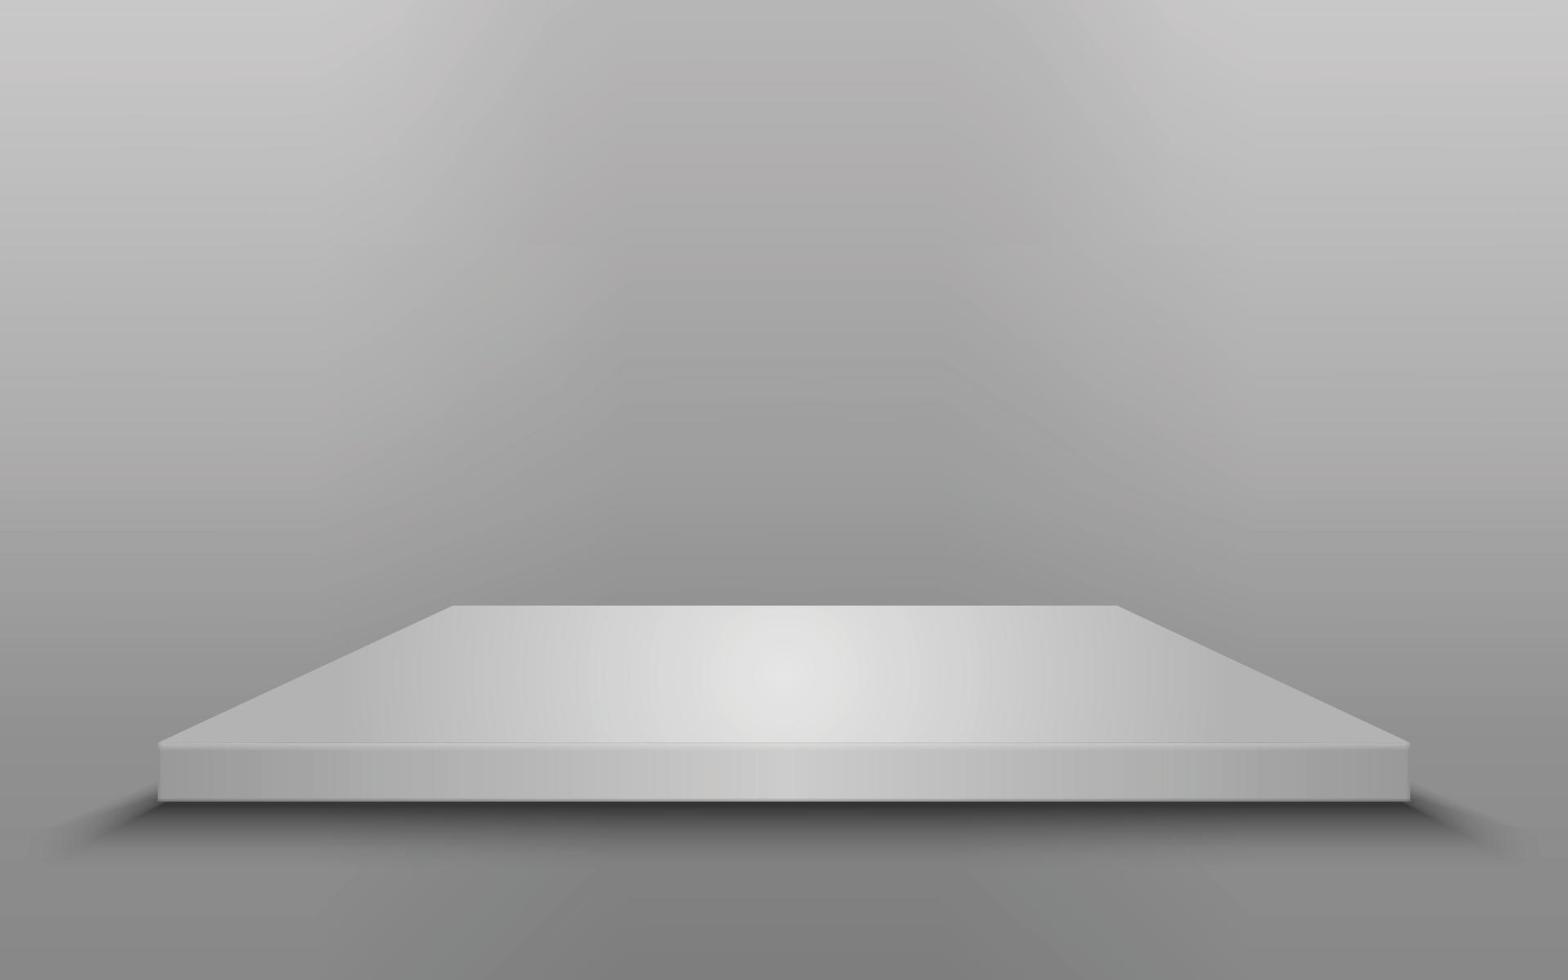 quadratisches podium isoliert vektor